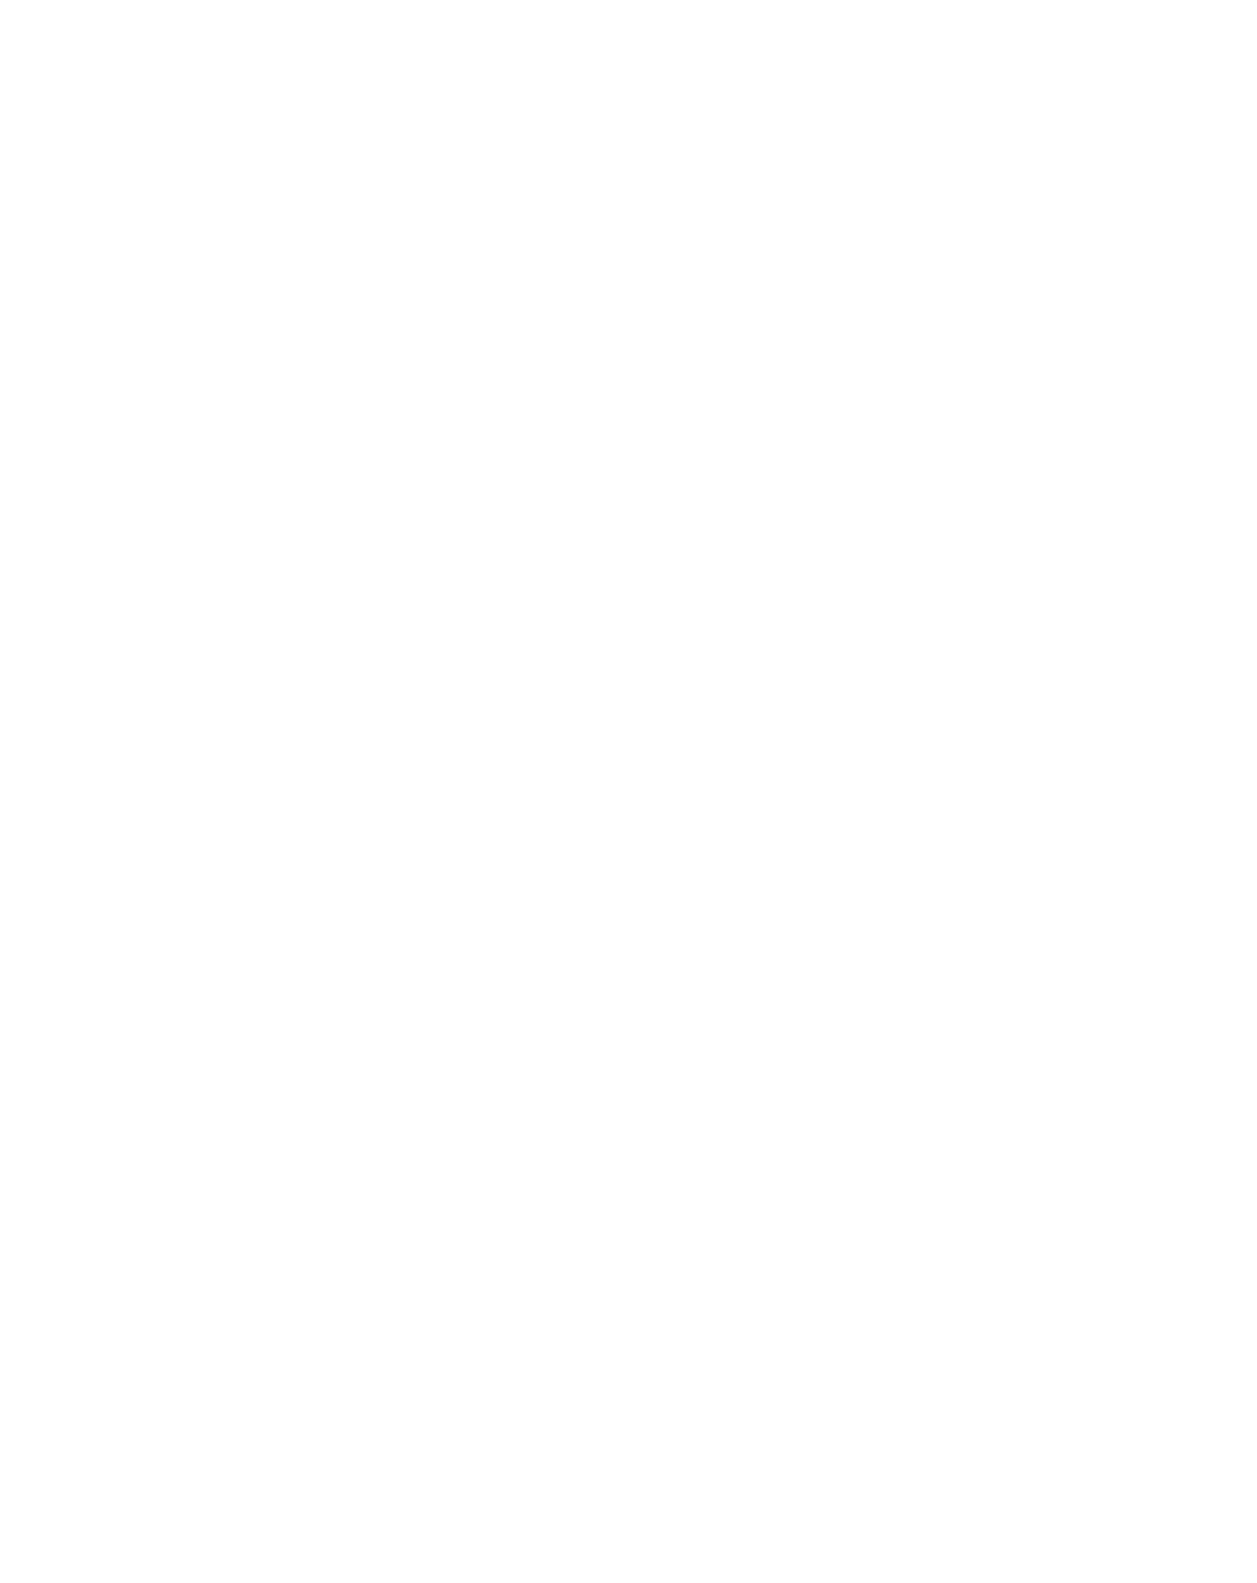 Logista (Compañía de Distribución Integral Logista) logo for dark backgrounds (transparent PNG)